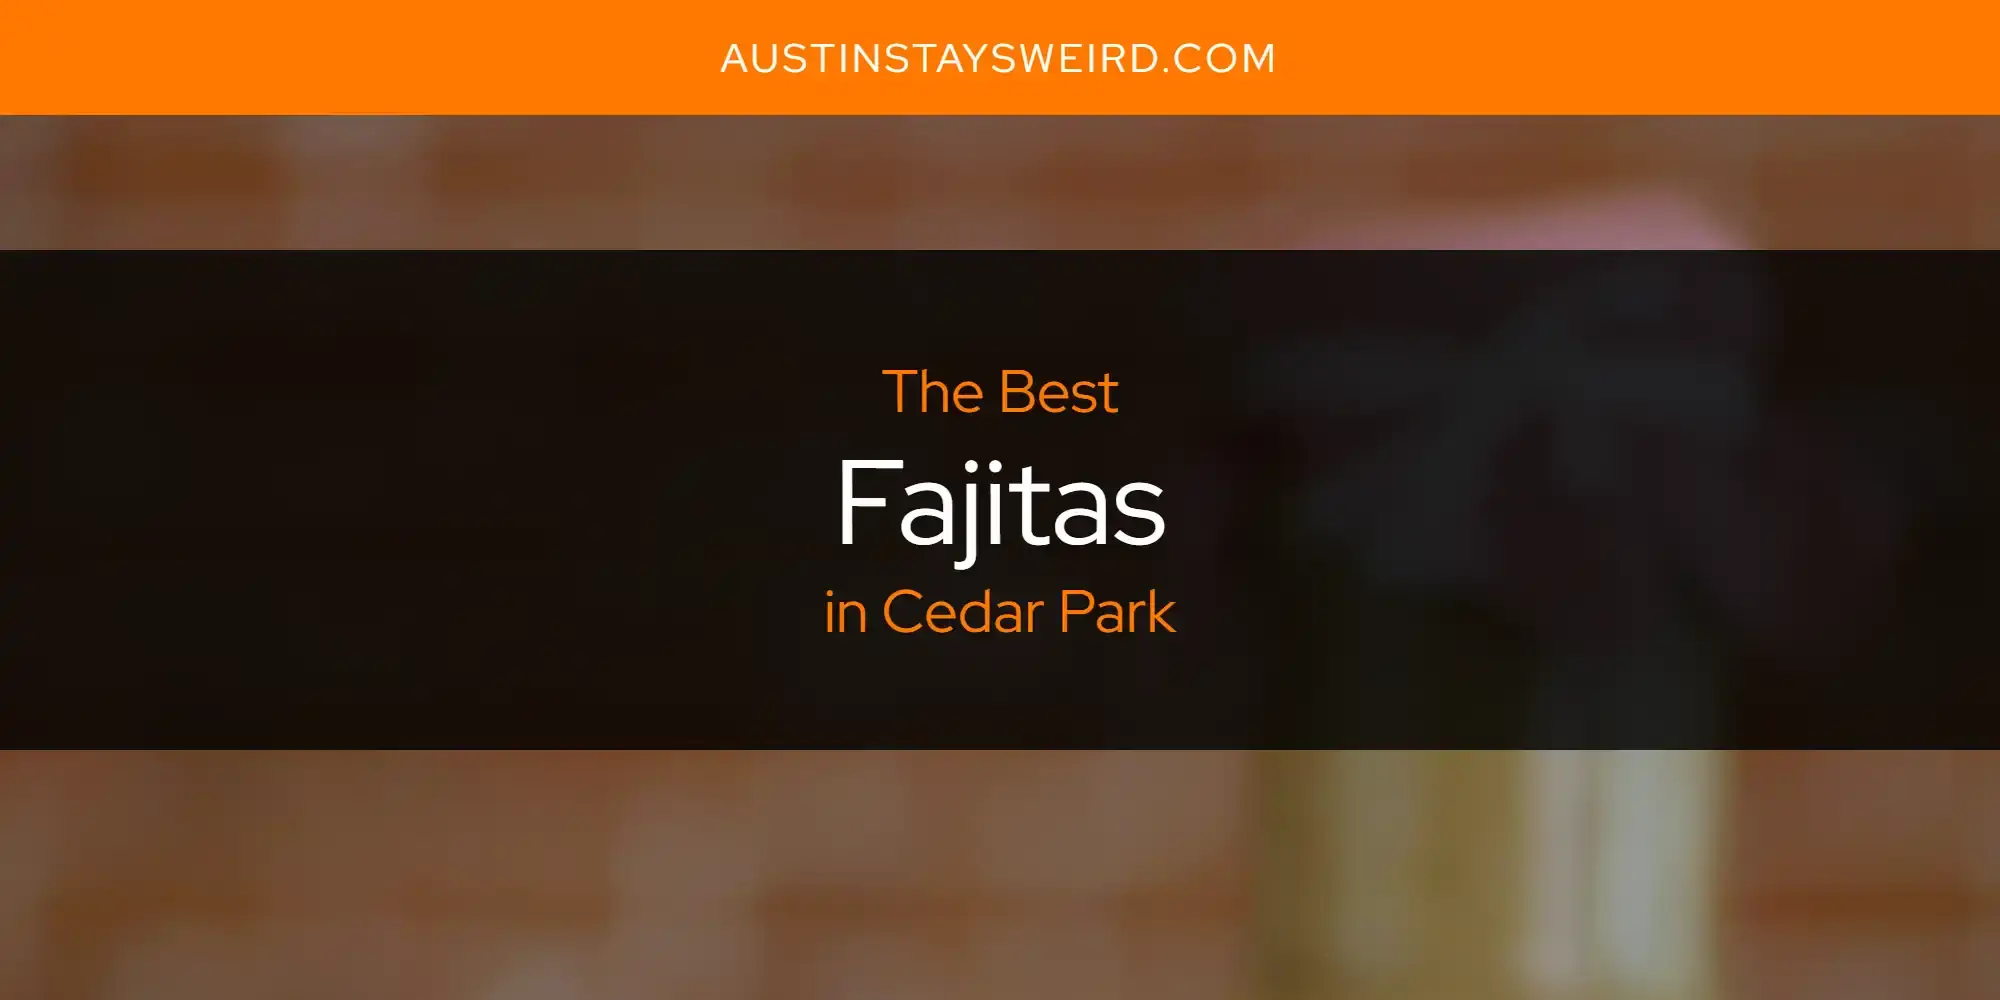 Best Fajitas in Cedar Park? Here's the Top 8